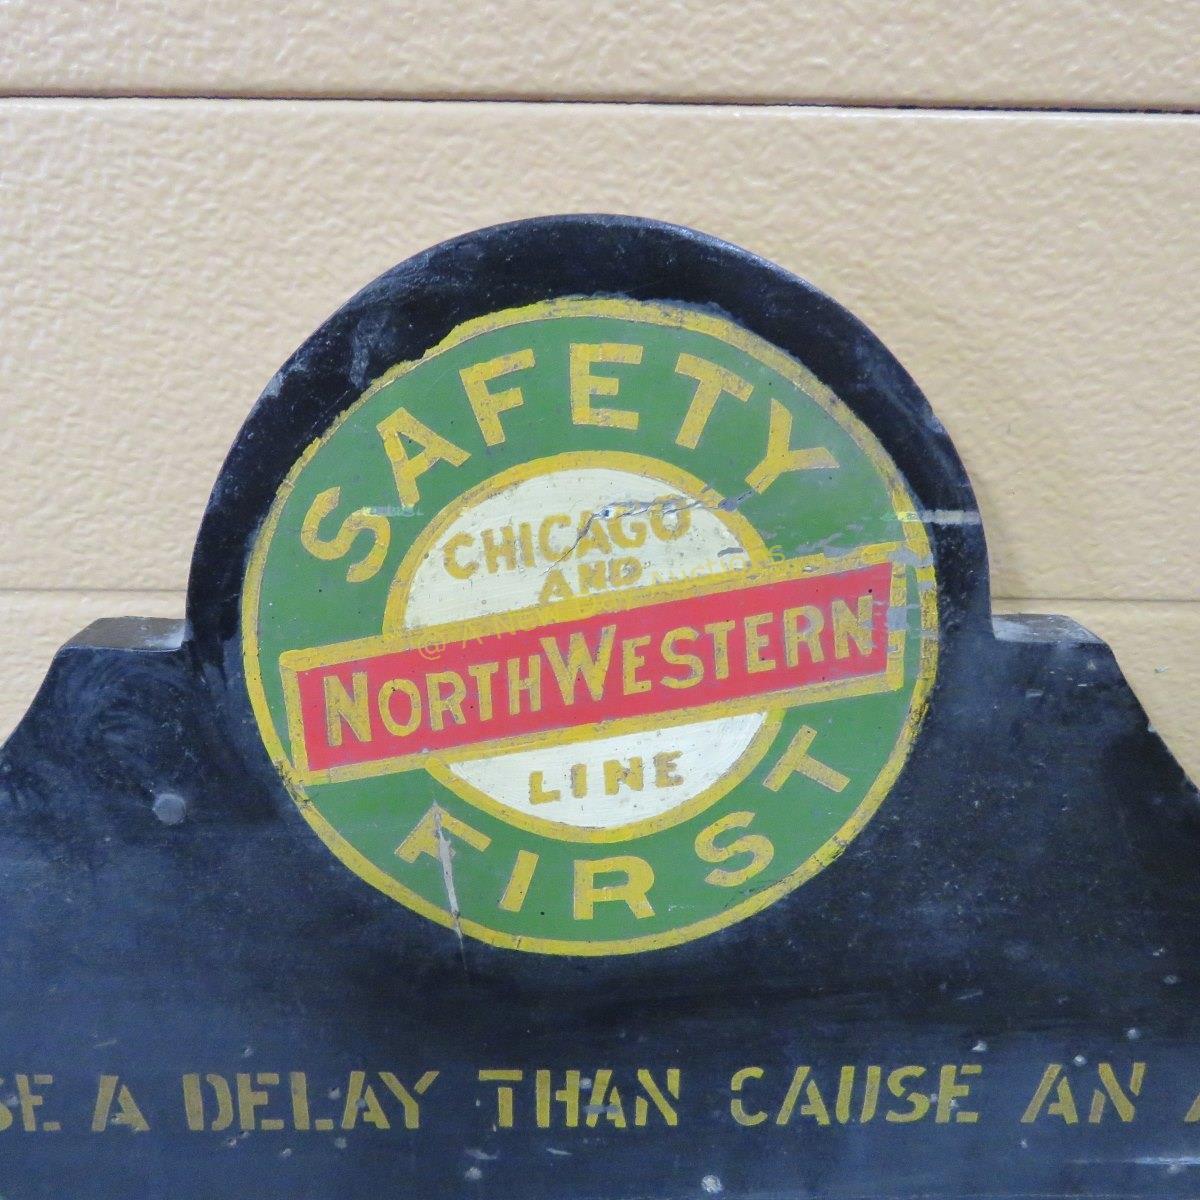 Chicago Northwestern Safety First Board